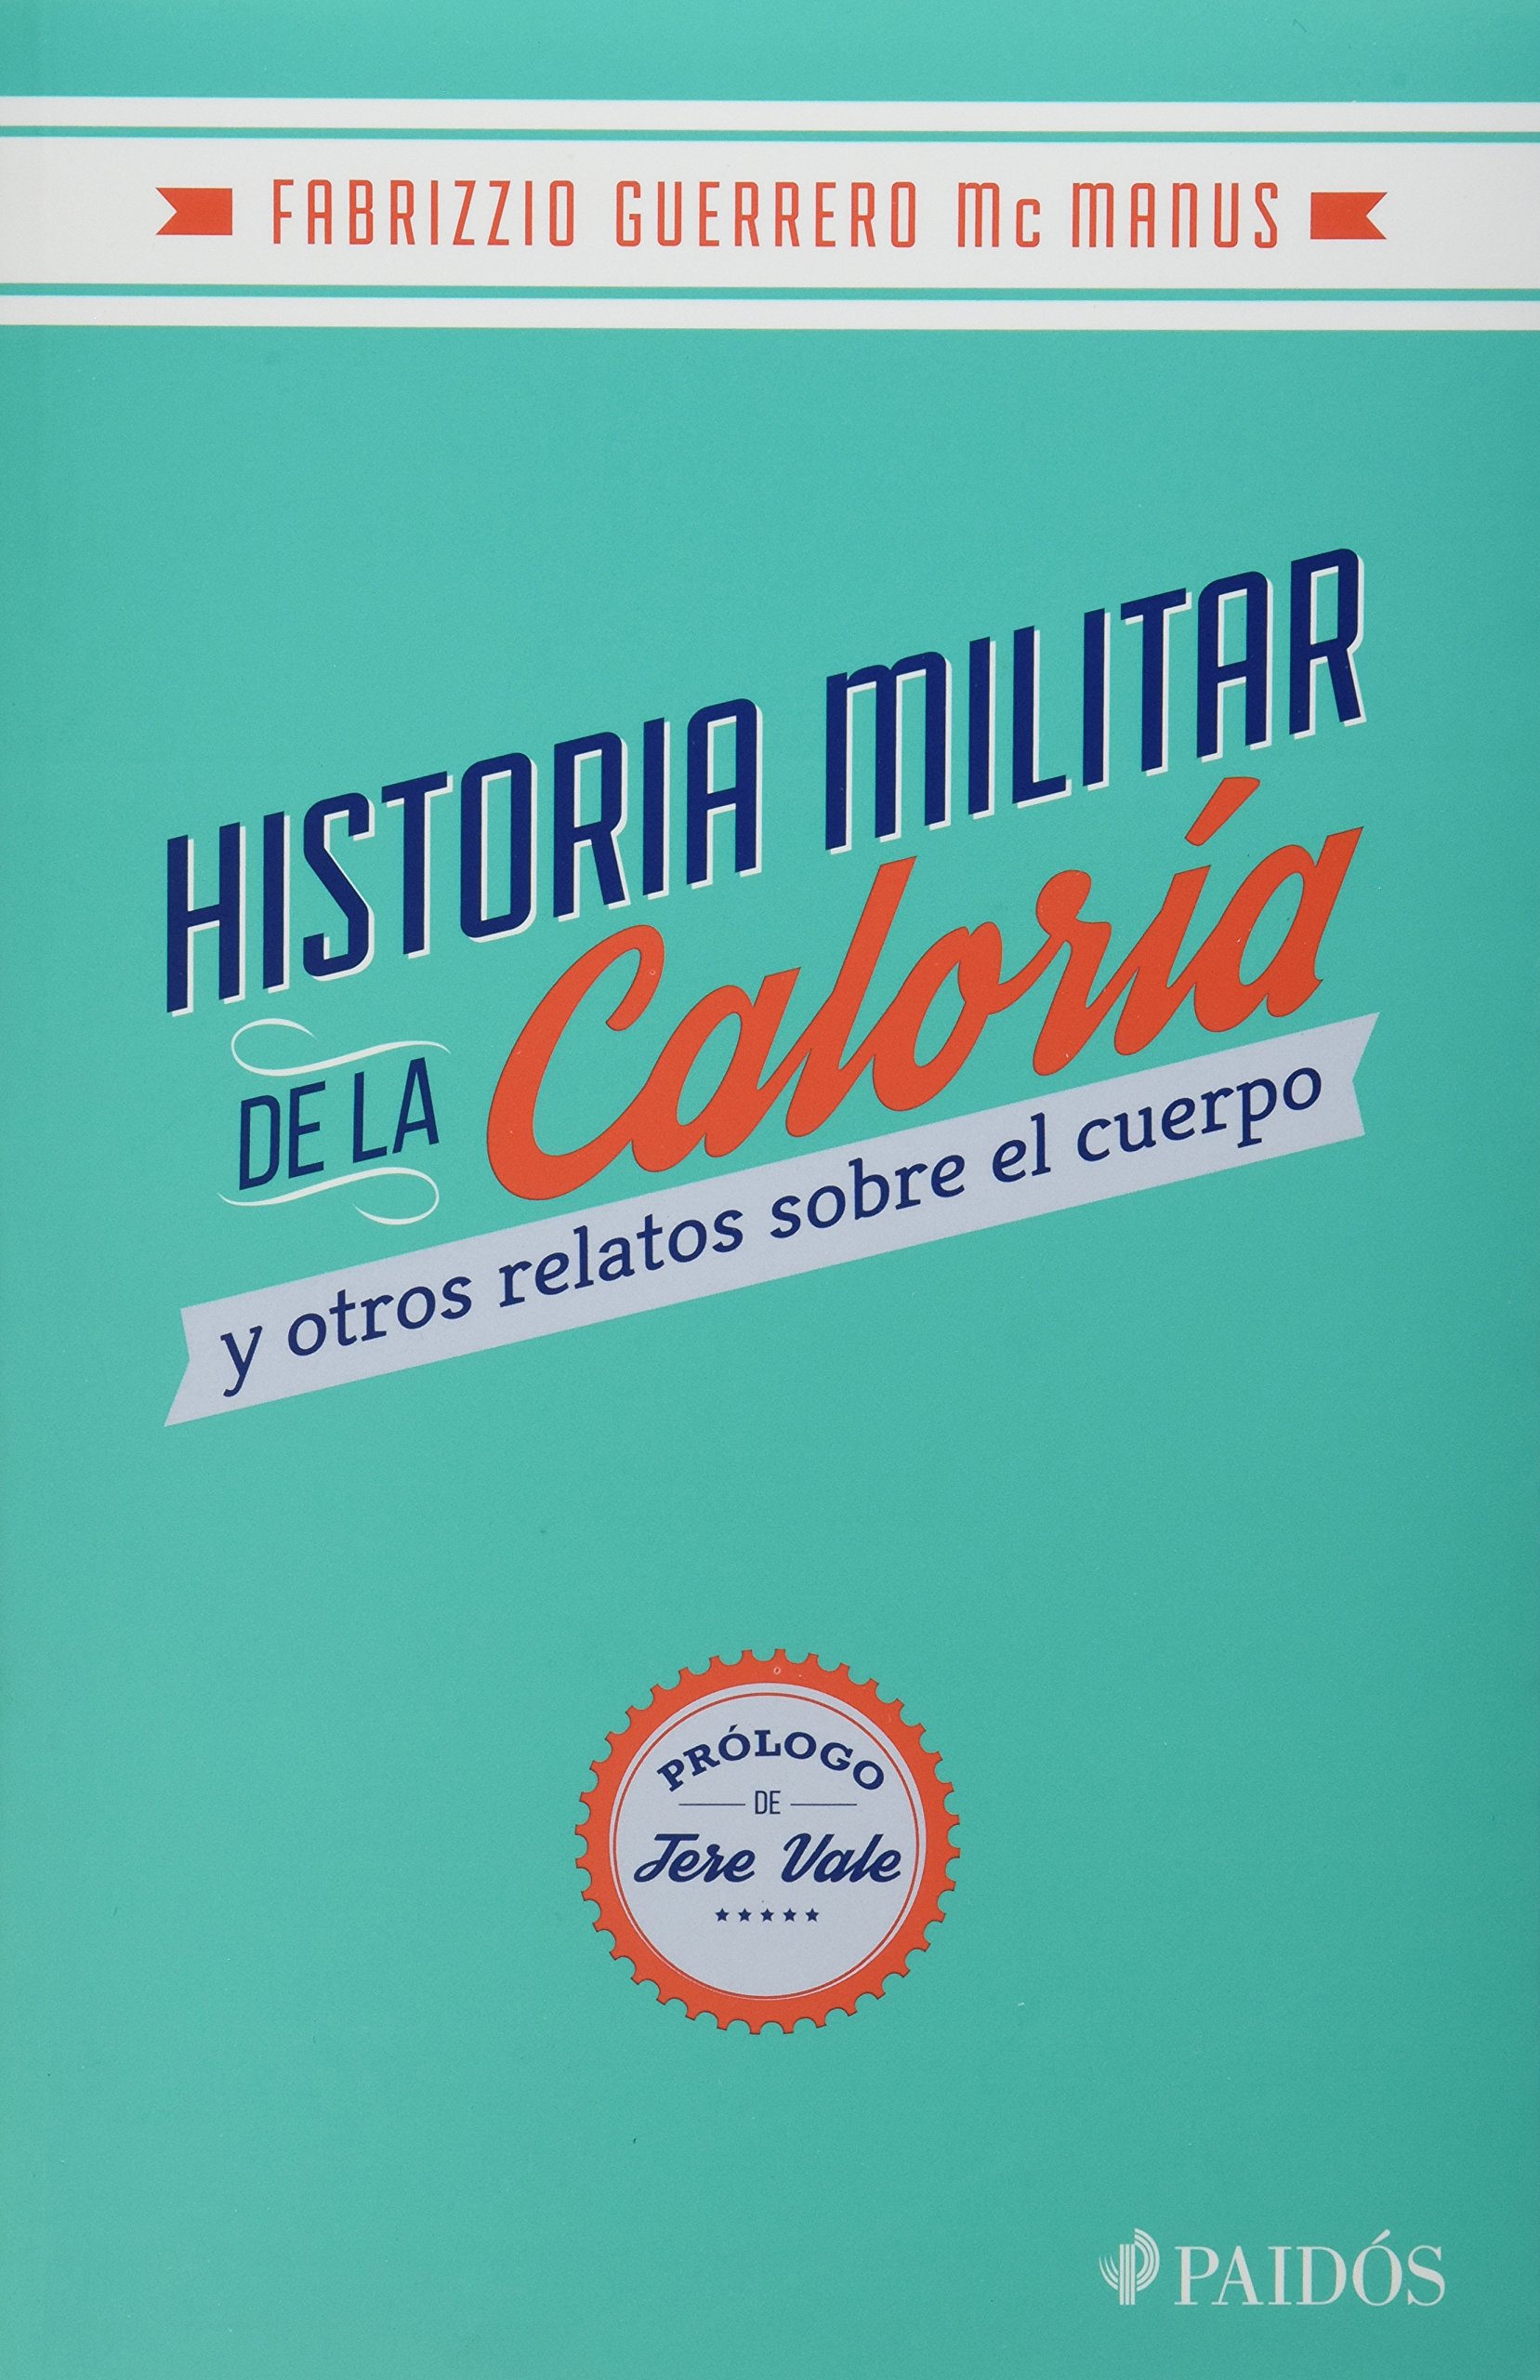 Libro Impreso-Historia Militar de la Caloría y otros Relatos sobre el Cuerpo